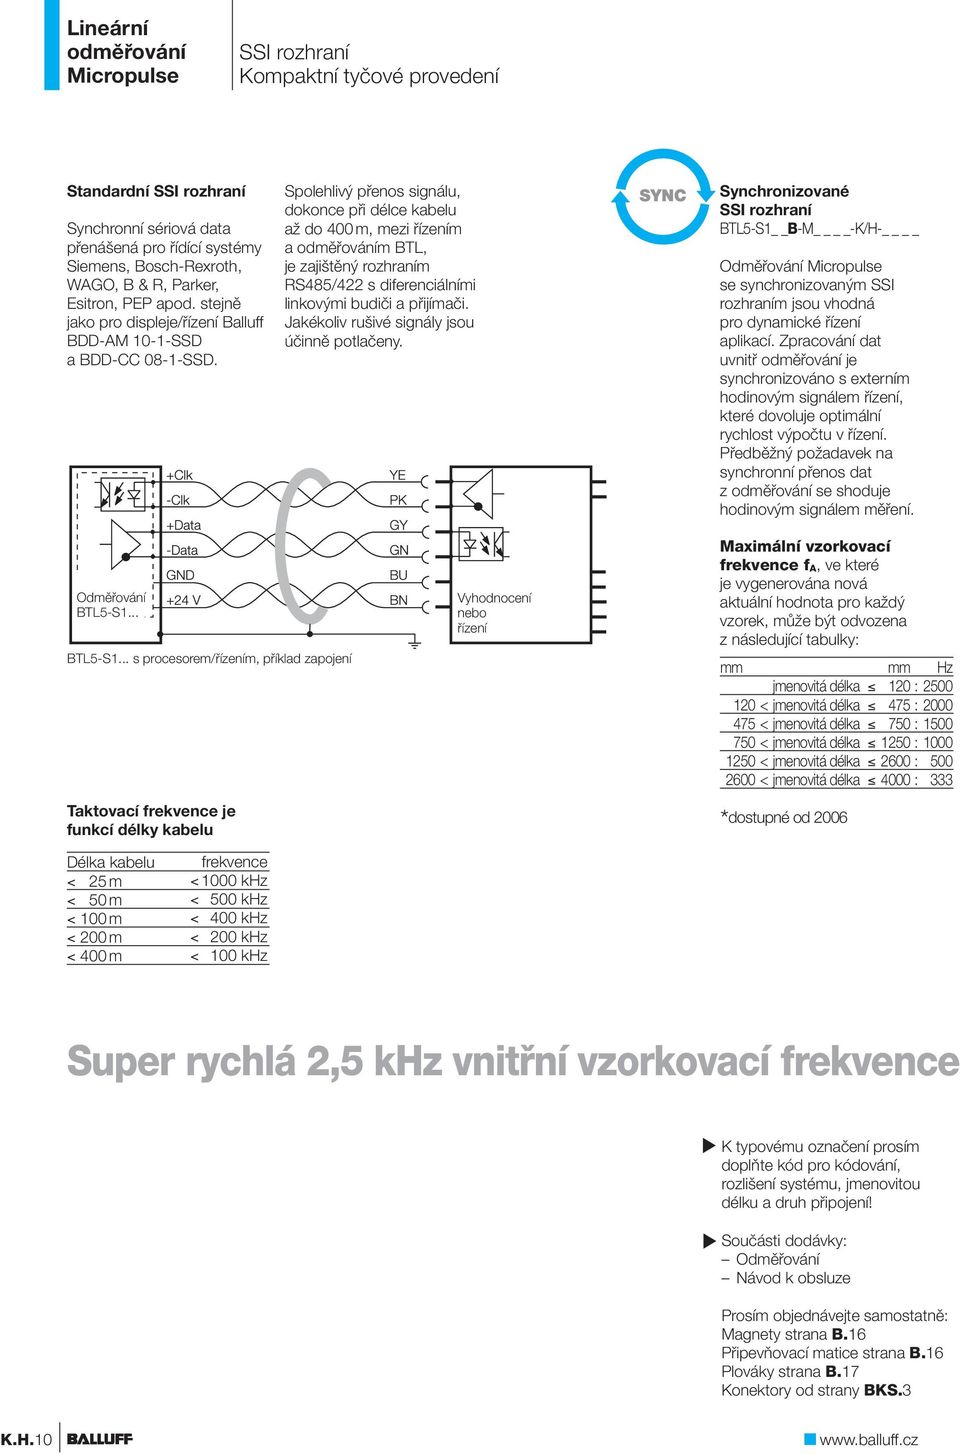 Spolehlivý přenos signálu, dokonce při délce kabelu až do 400 m, mezi řízením a m, je zajištěný m RS485/422 s diferenciálními linkovými budiči a přijímači.